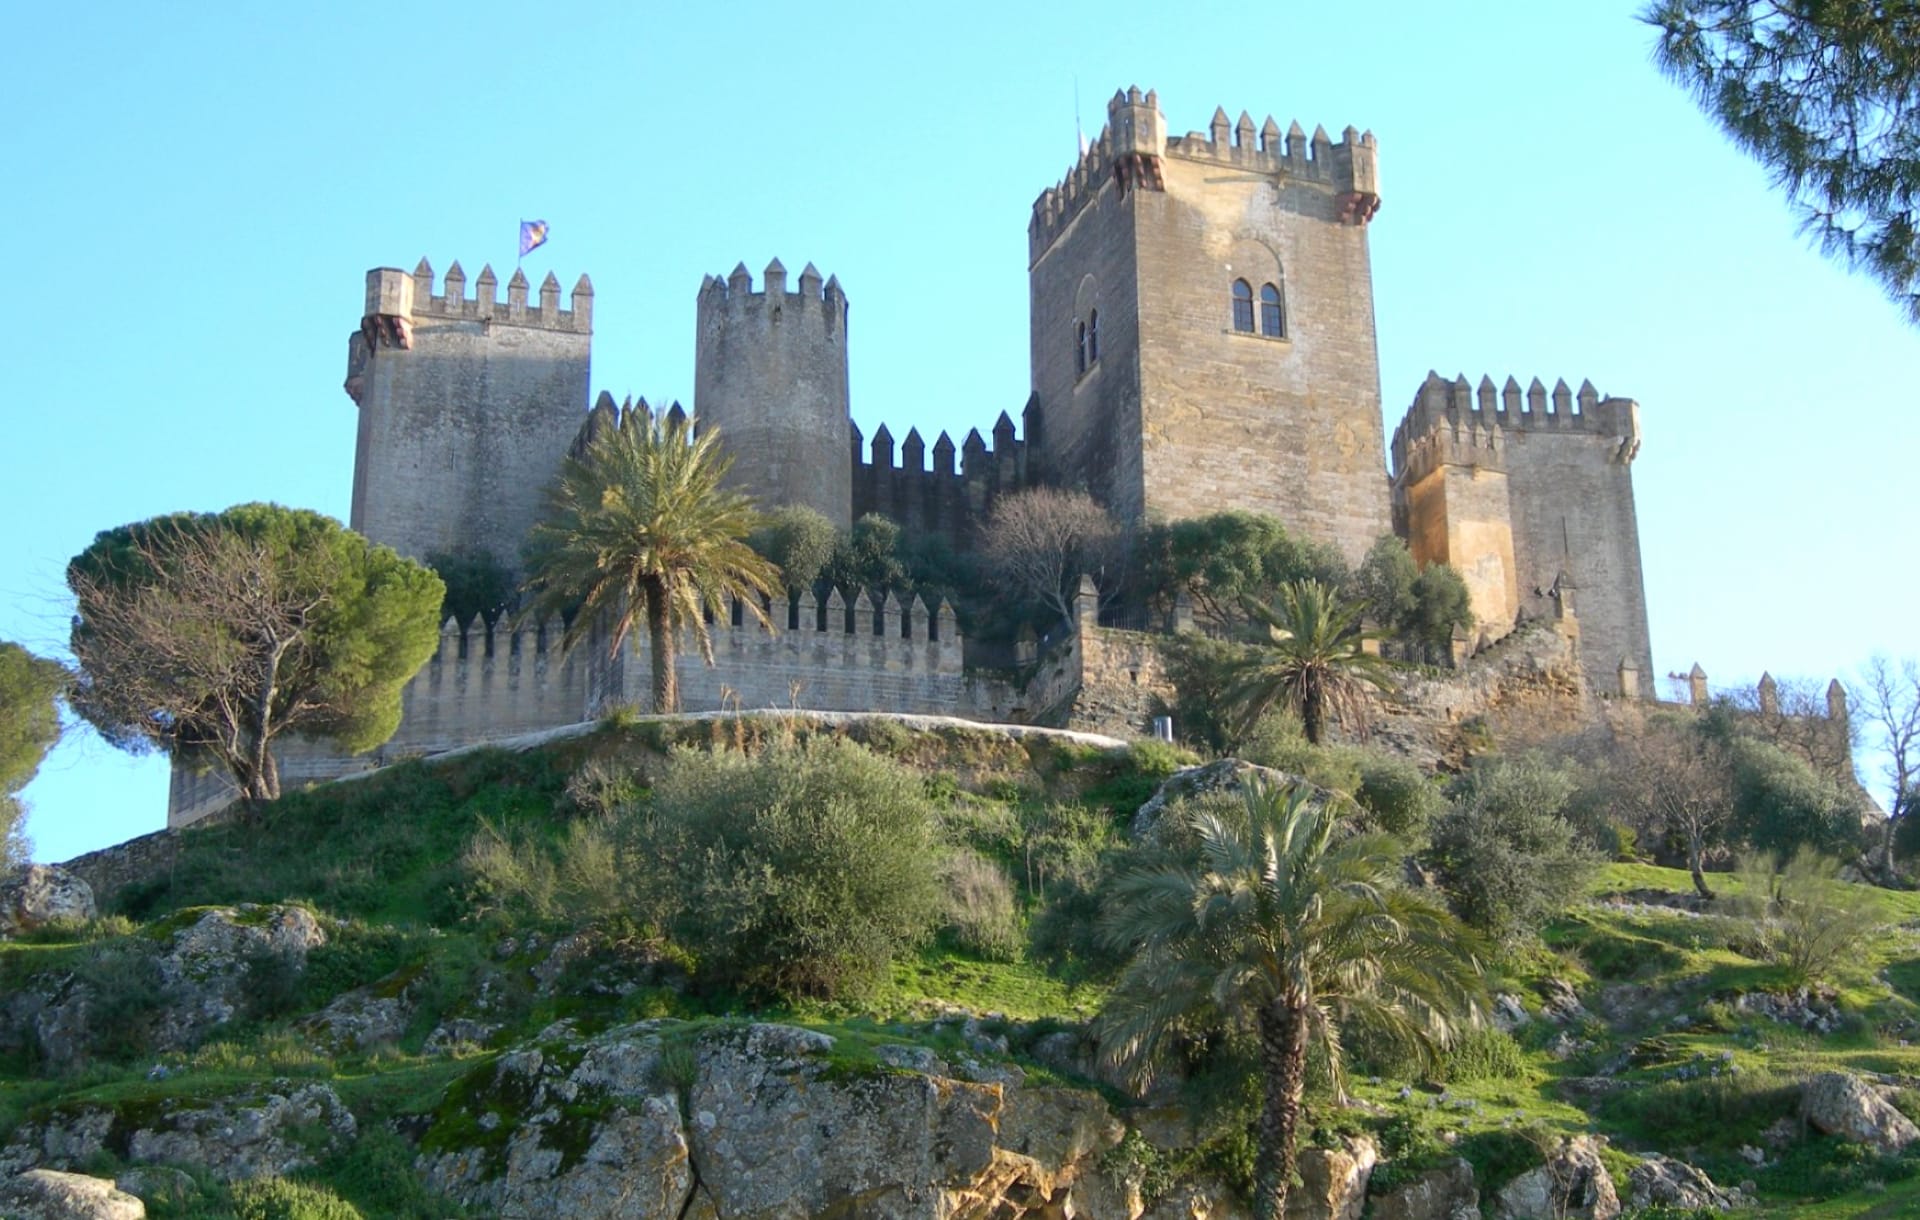 Castillo de Almodovar del Rio at 640 x 960 iPhone 4 size wallpapers HD quality